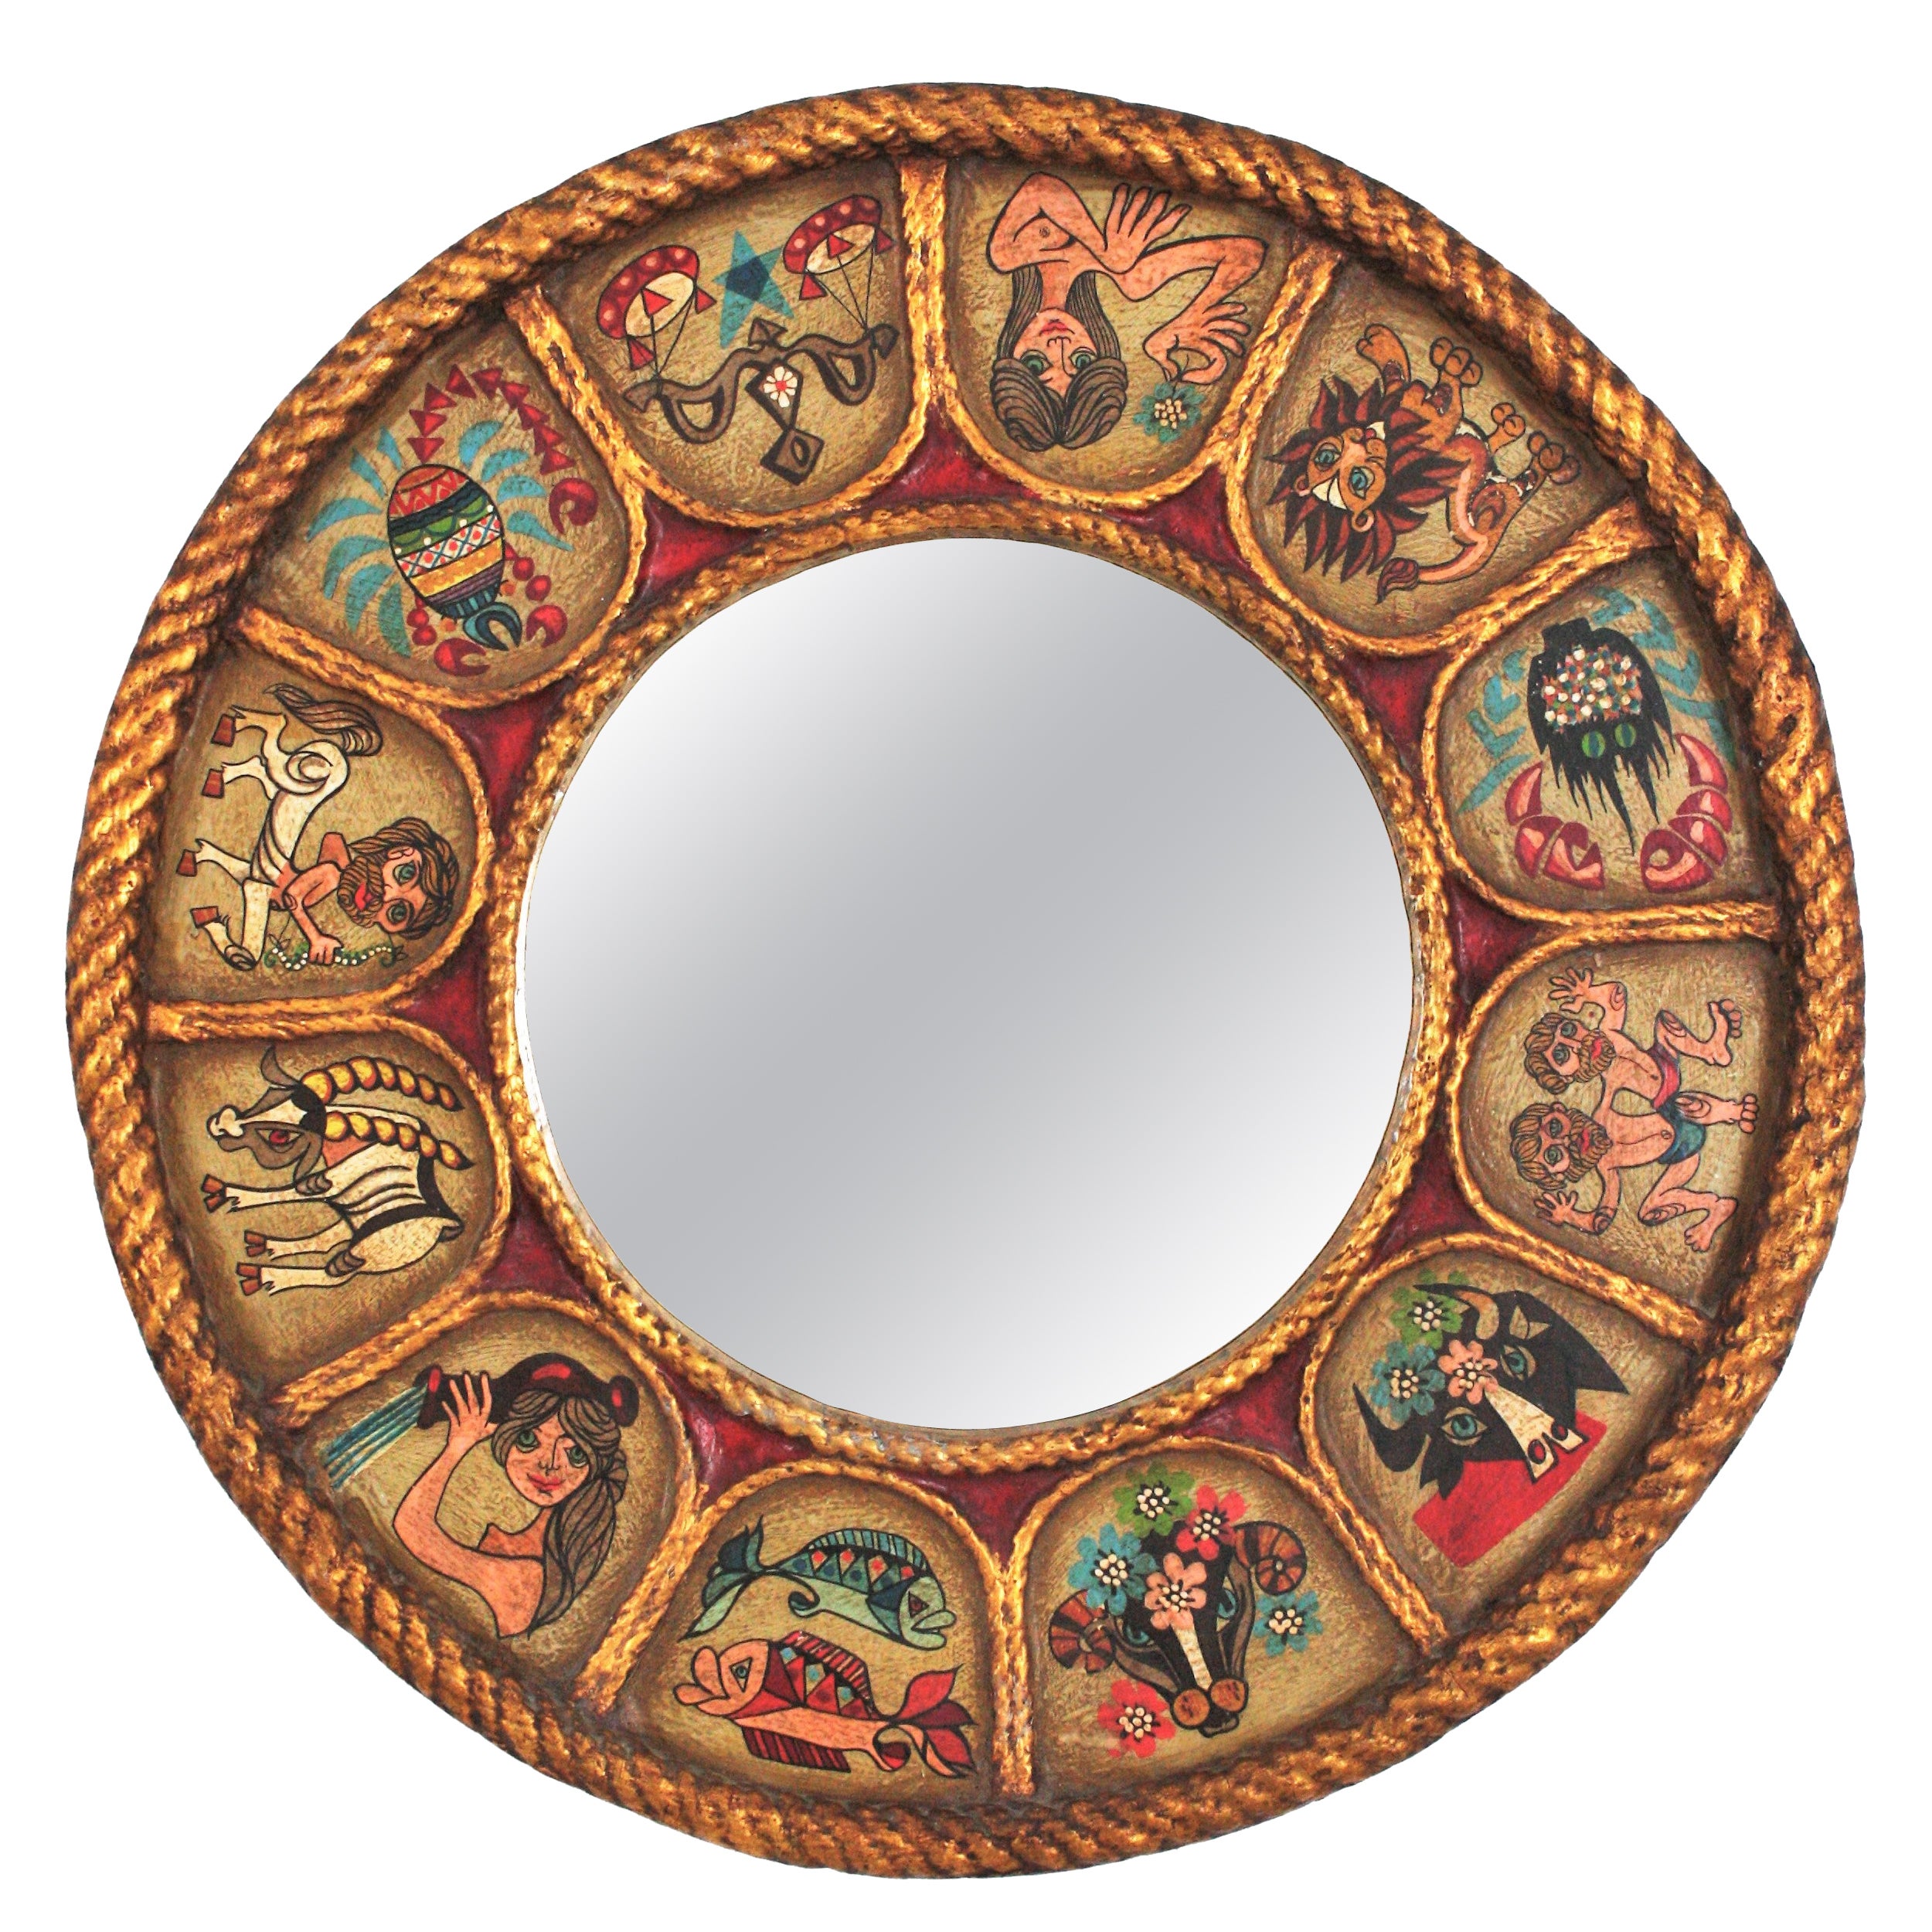 Spanish Zodiac Round Mirror in Gilt Polychrome Wood, 1950s